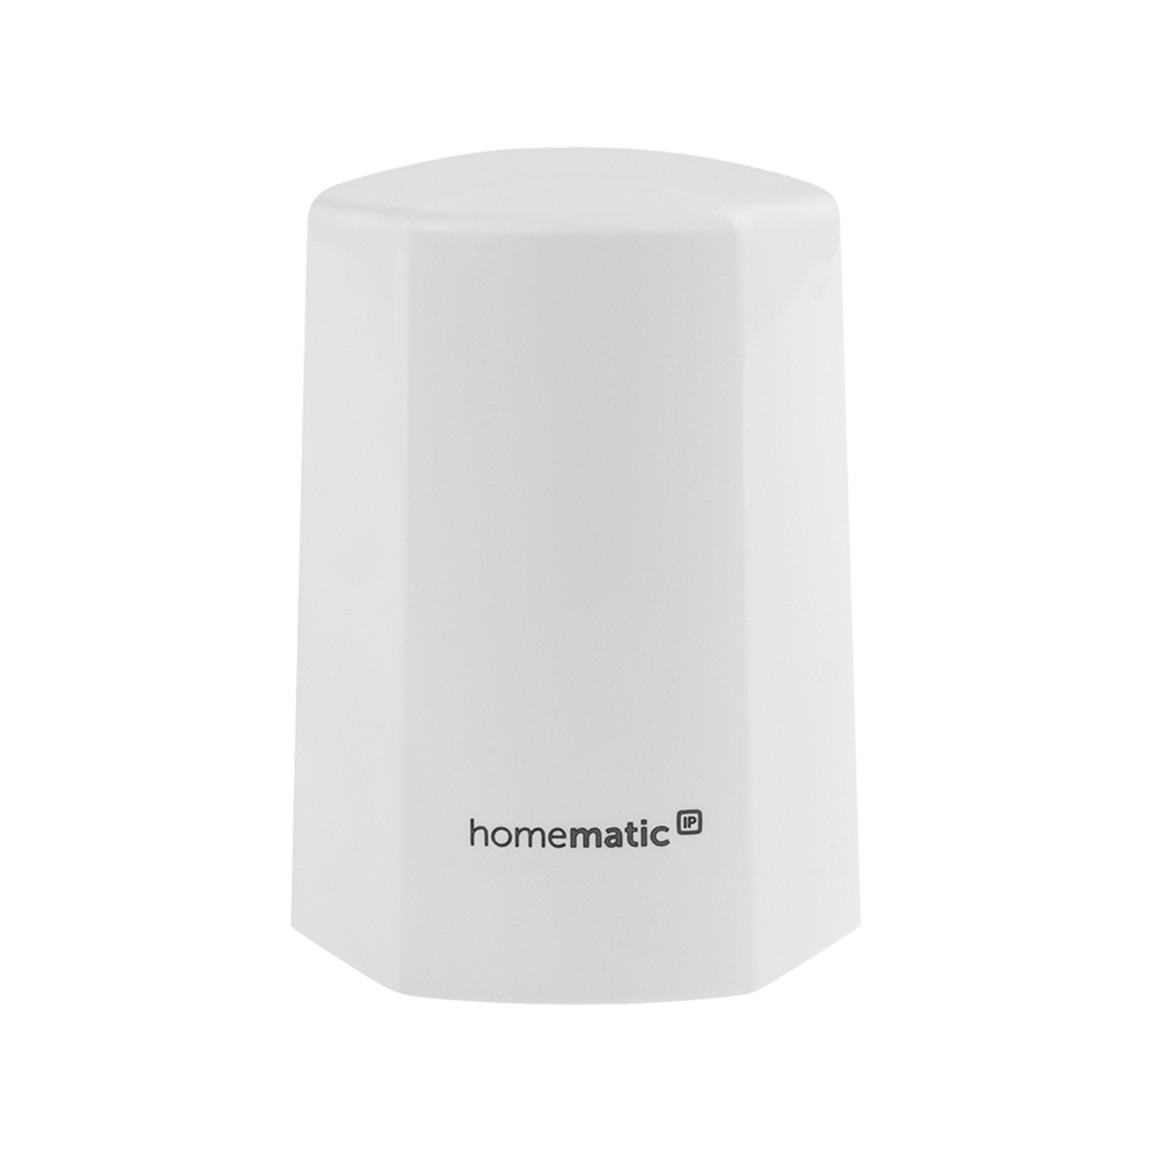 Homematic IP Temperatur- und Luftfeuchtigkeitssensor – außen - Weiß